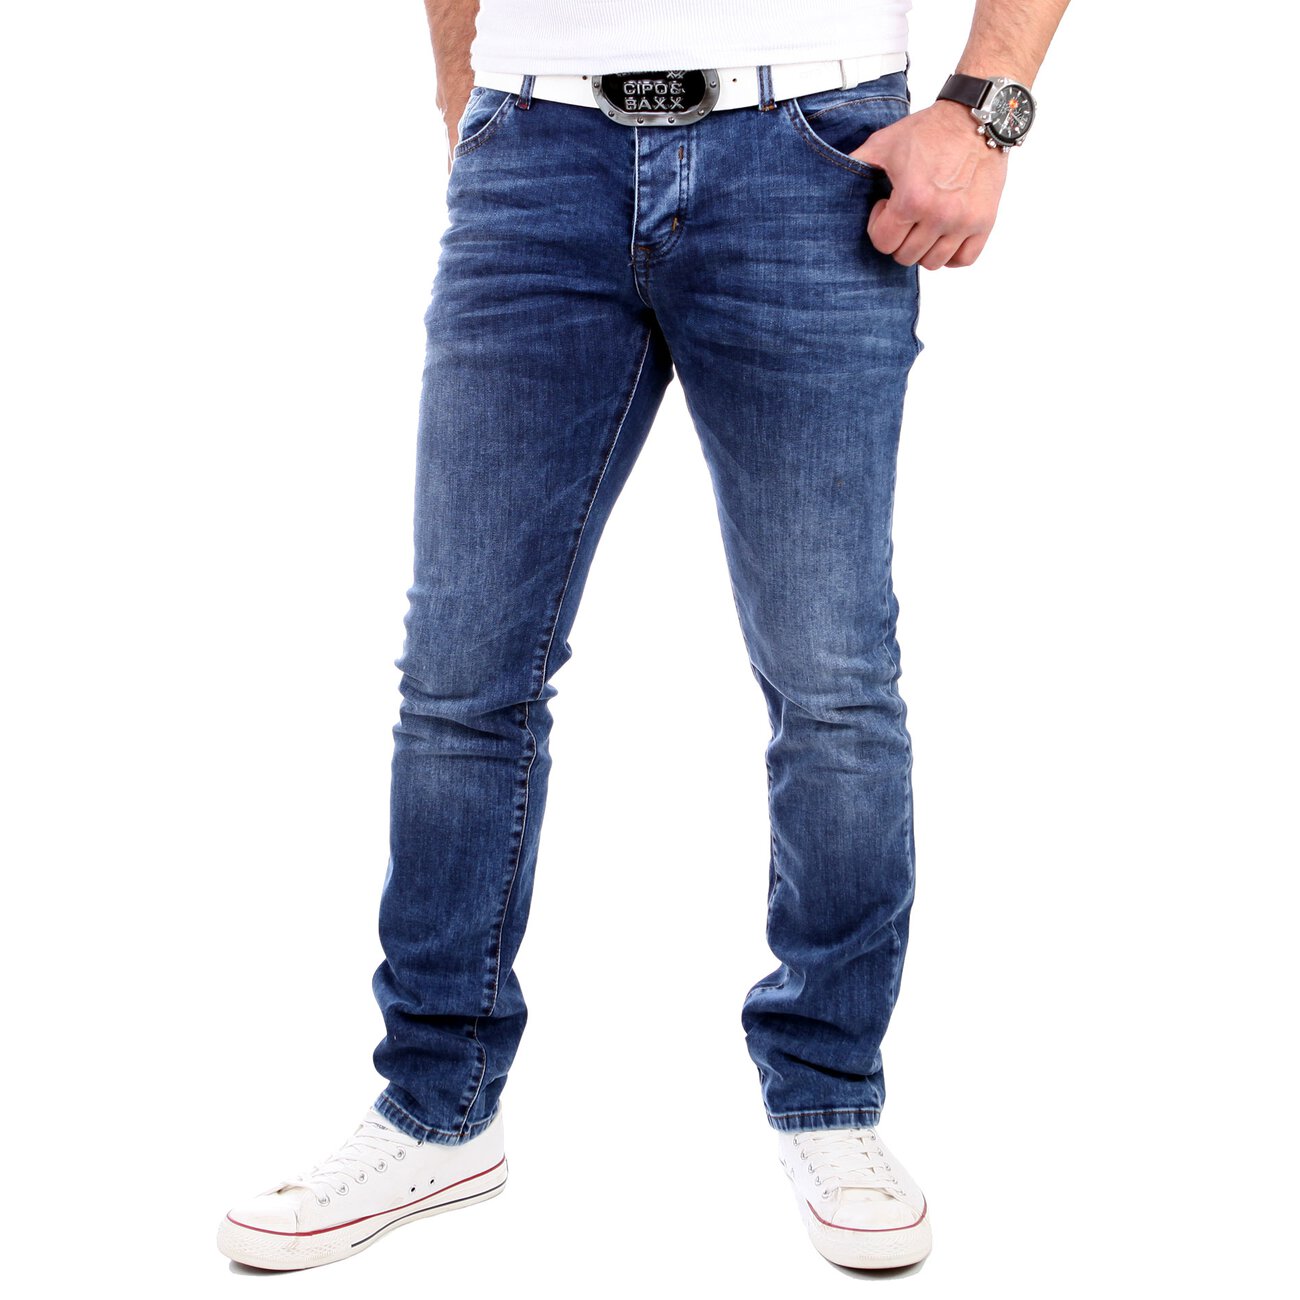 reslad-jeans-herren-slim-fit-light-bleached-5-pocket-jeans-hose-rs-2060-blau.jpg